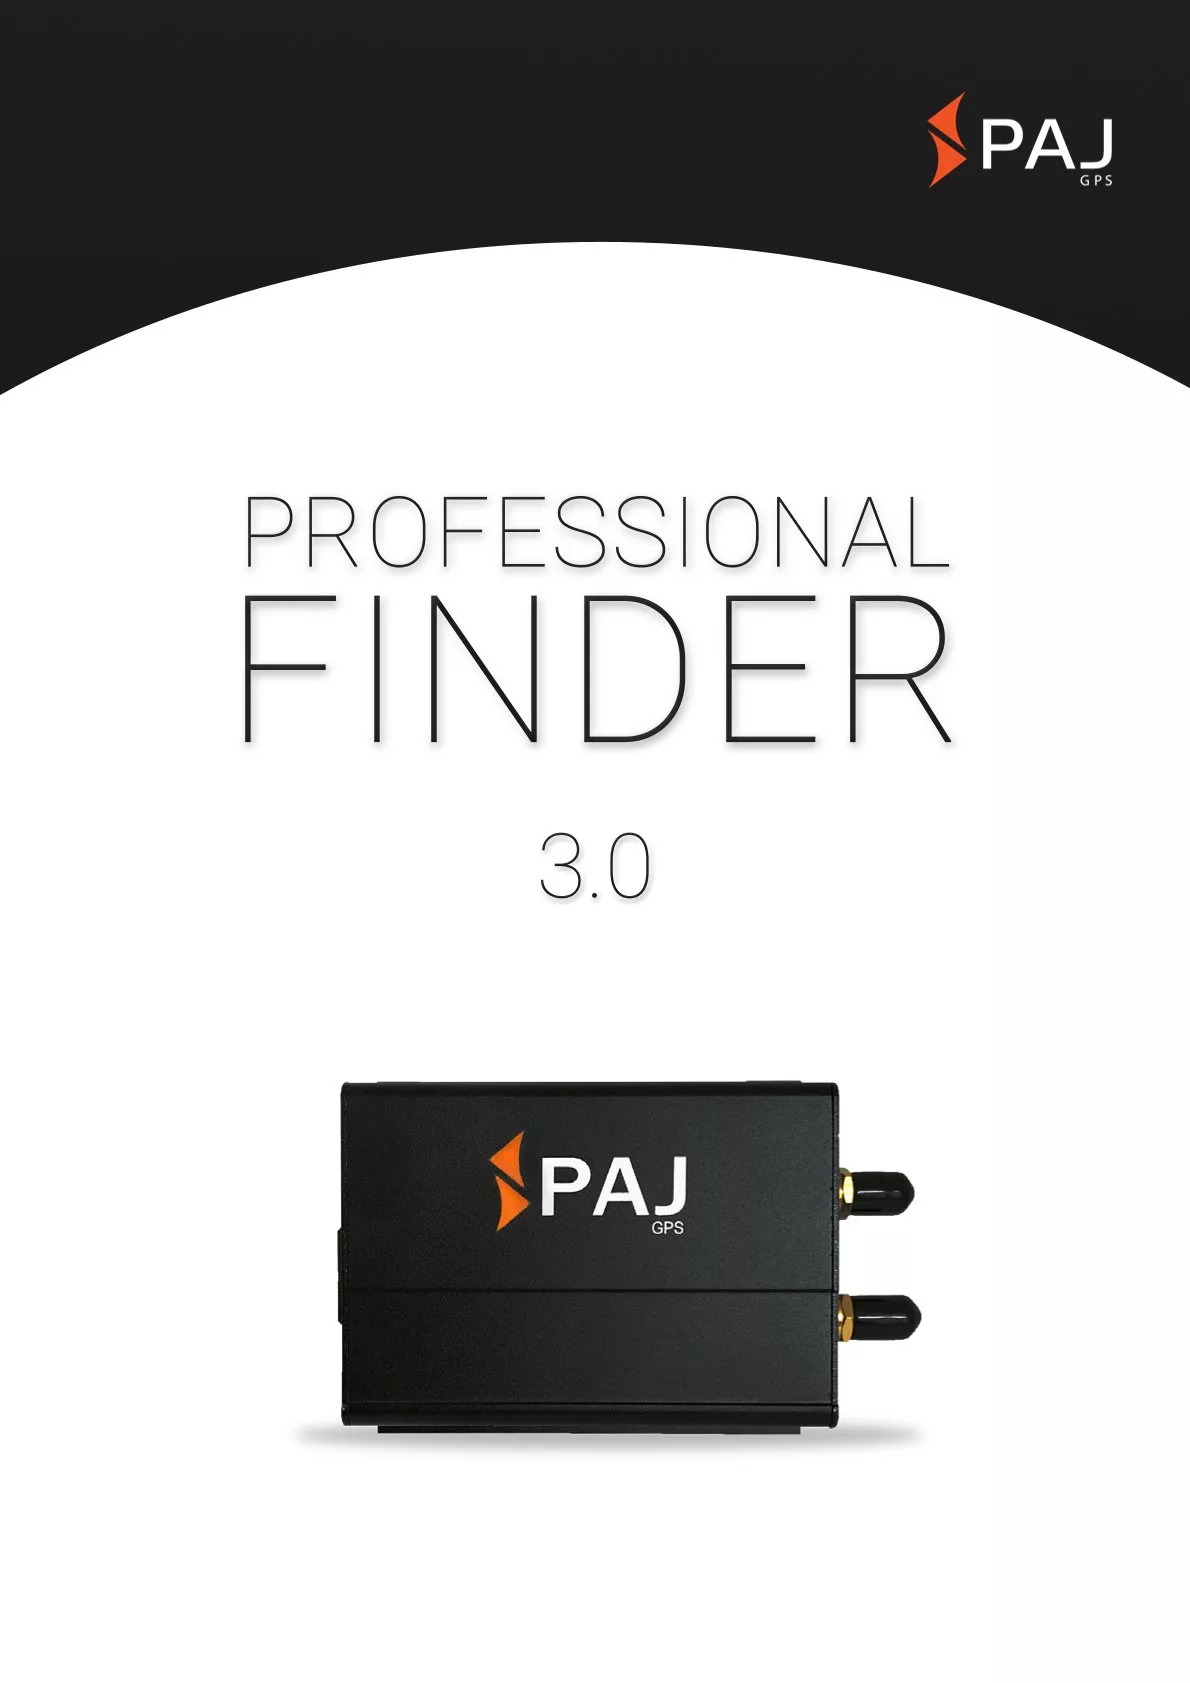 Immagine di copertina per scheda tecnica PROFESSIONAL Finder 3.0